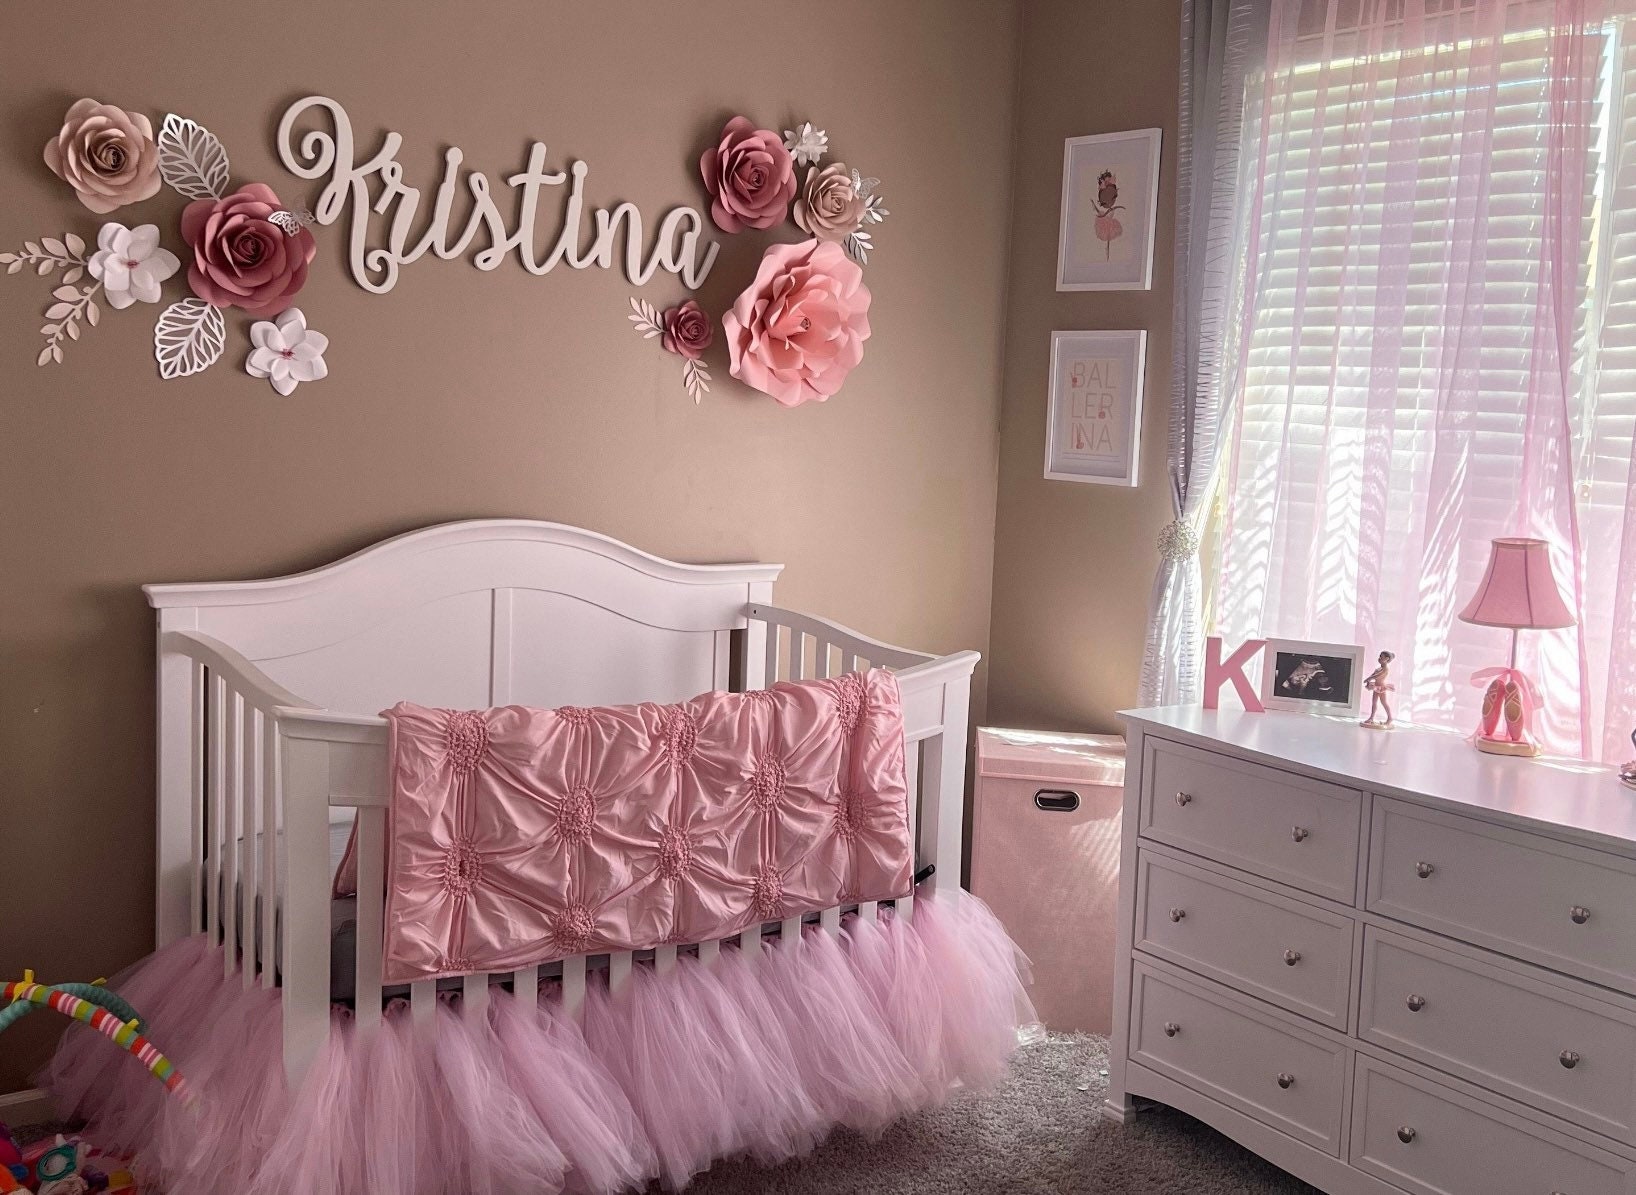 PINK Crib Bedding Set with Ruffle Trim and Sash Ties